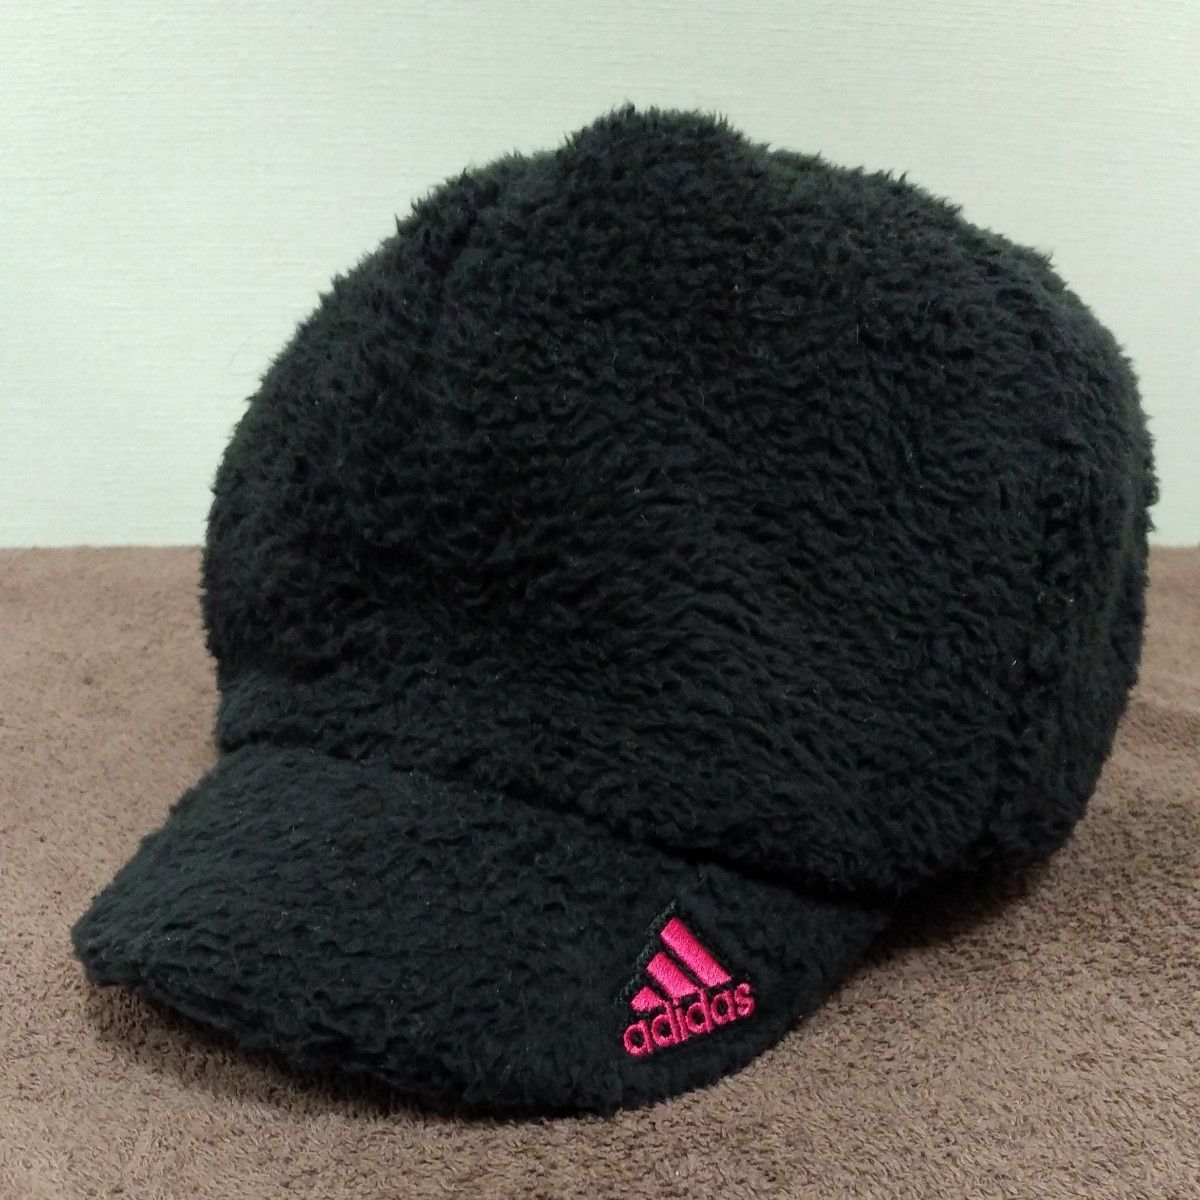 【暖かい】adidas アディダス ボアキャップ 帽子